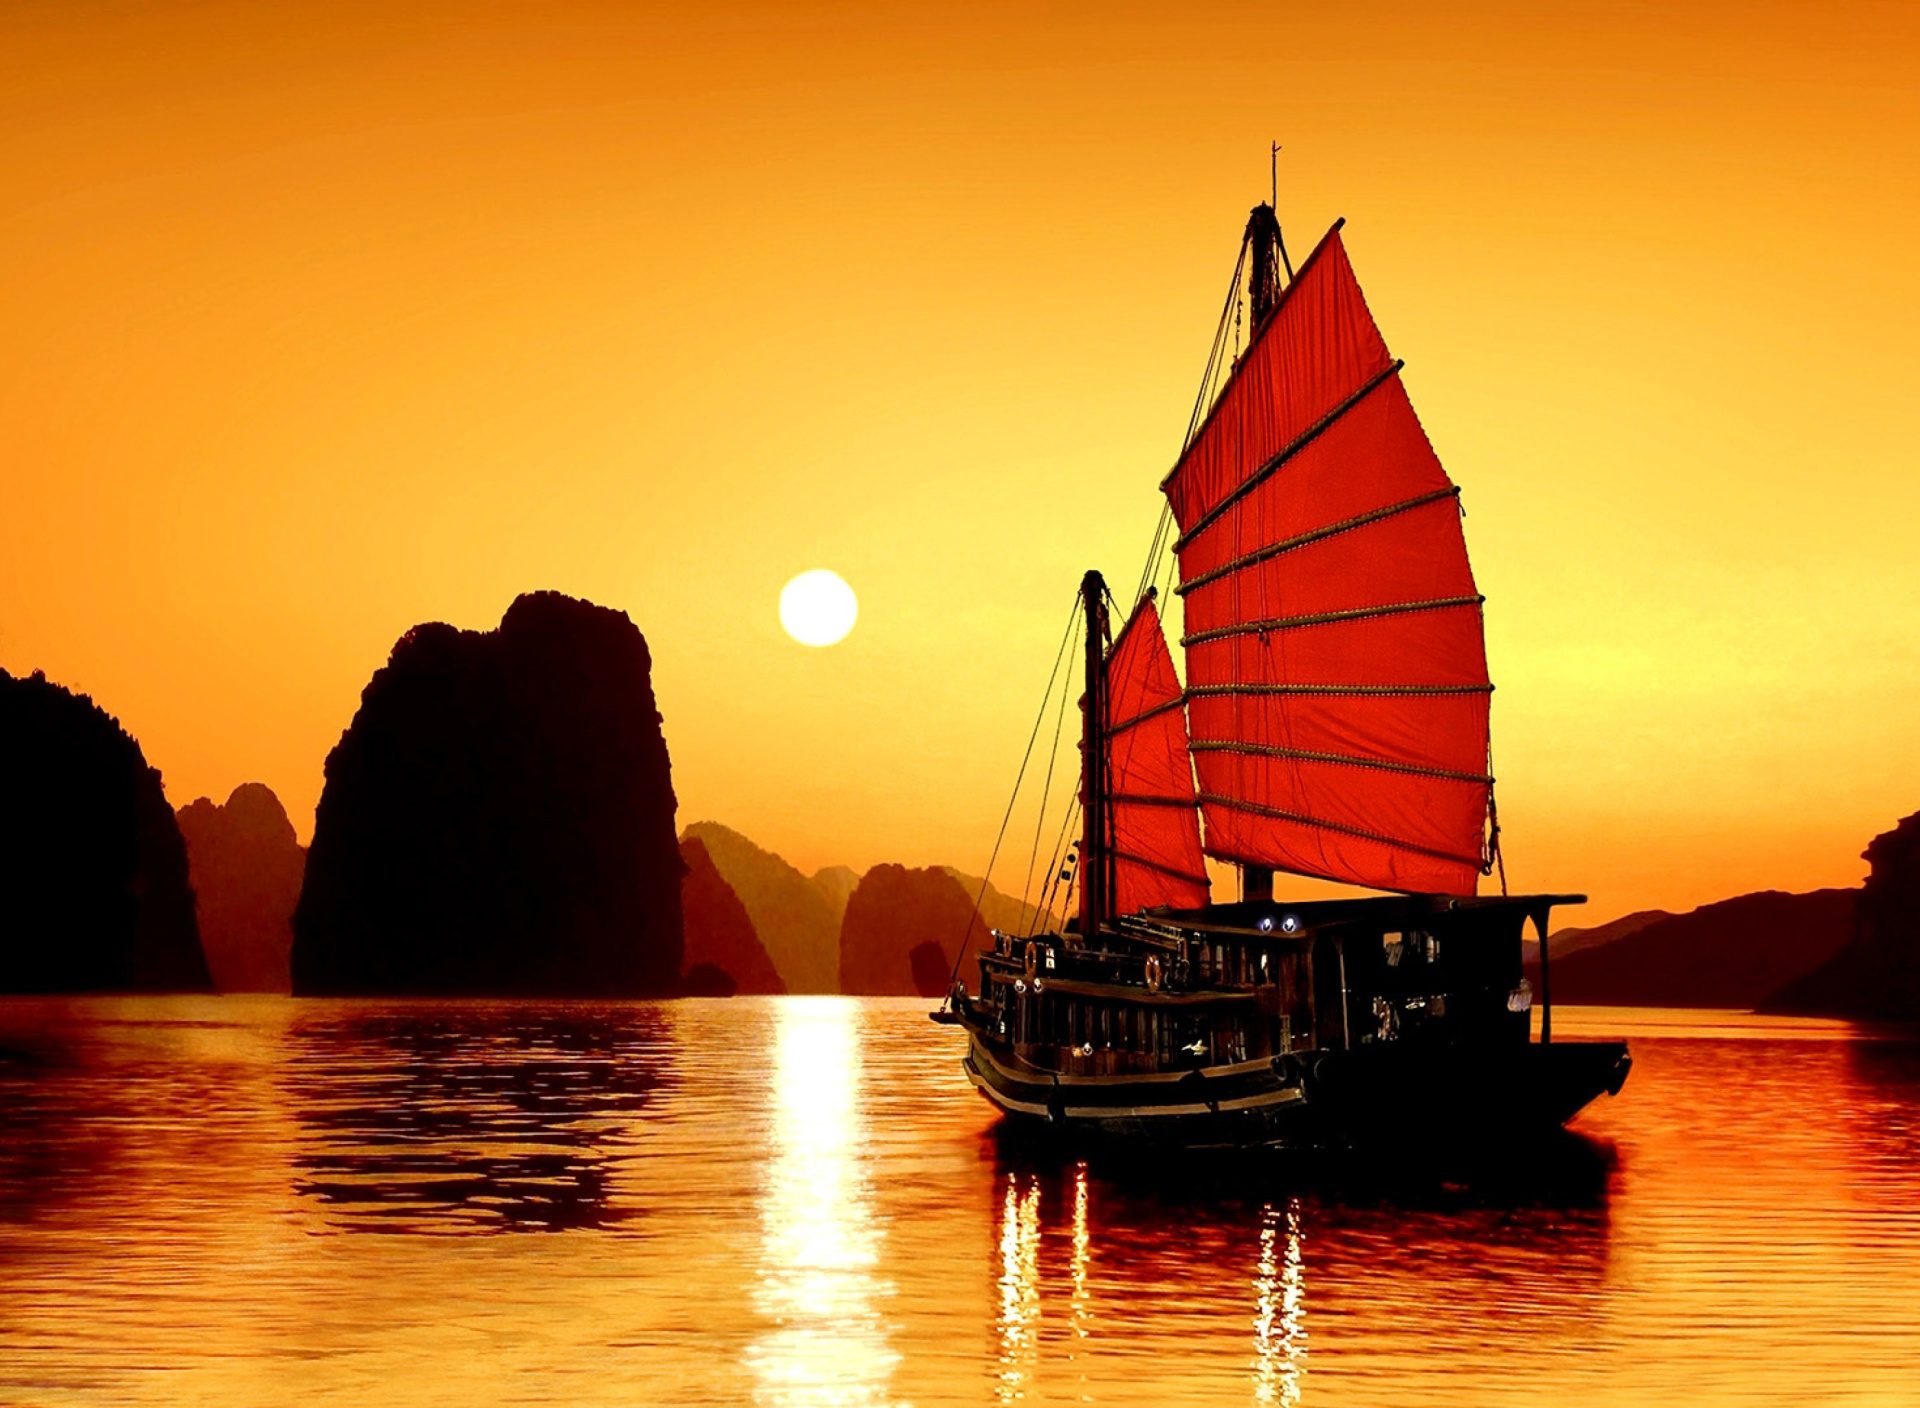 Обои Halong Bay, Vietnama in Sunset 1920x1408